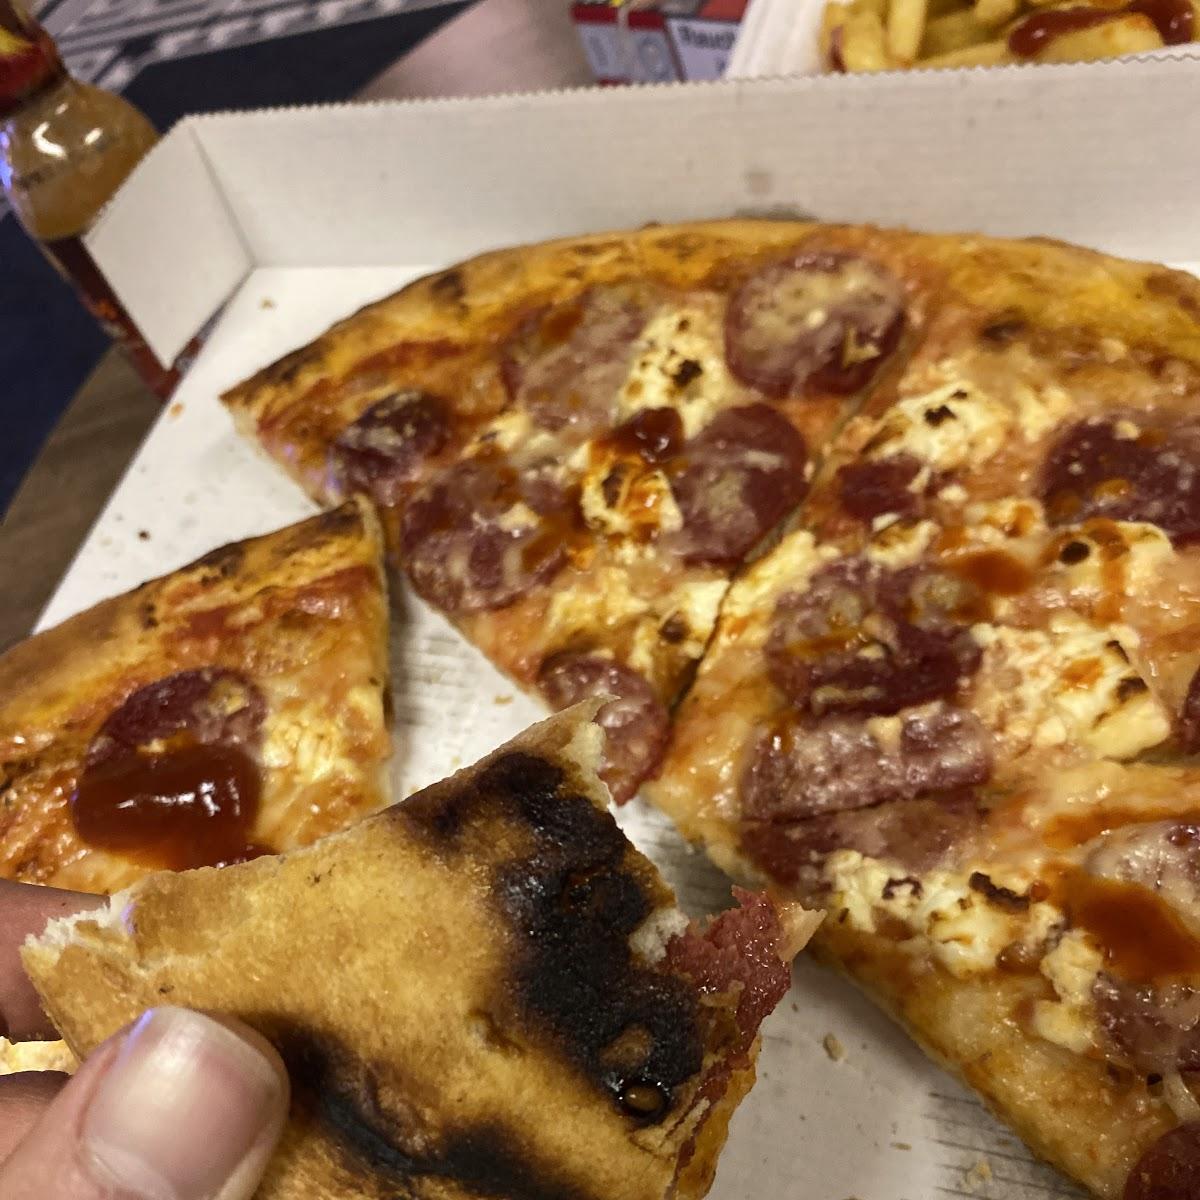 Milano Pizza